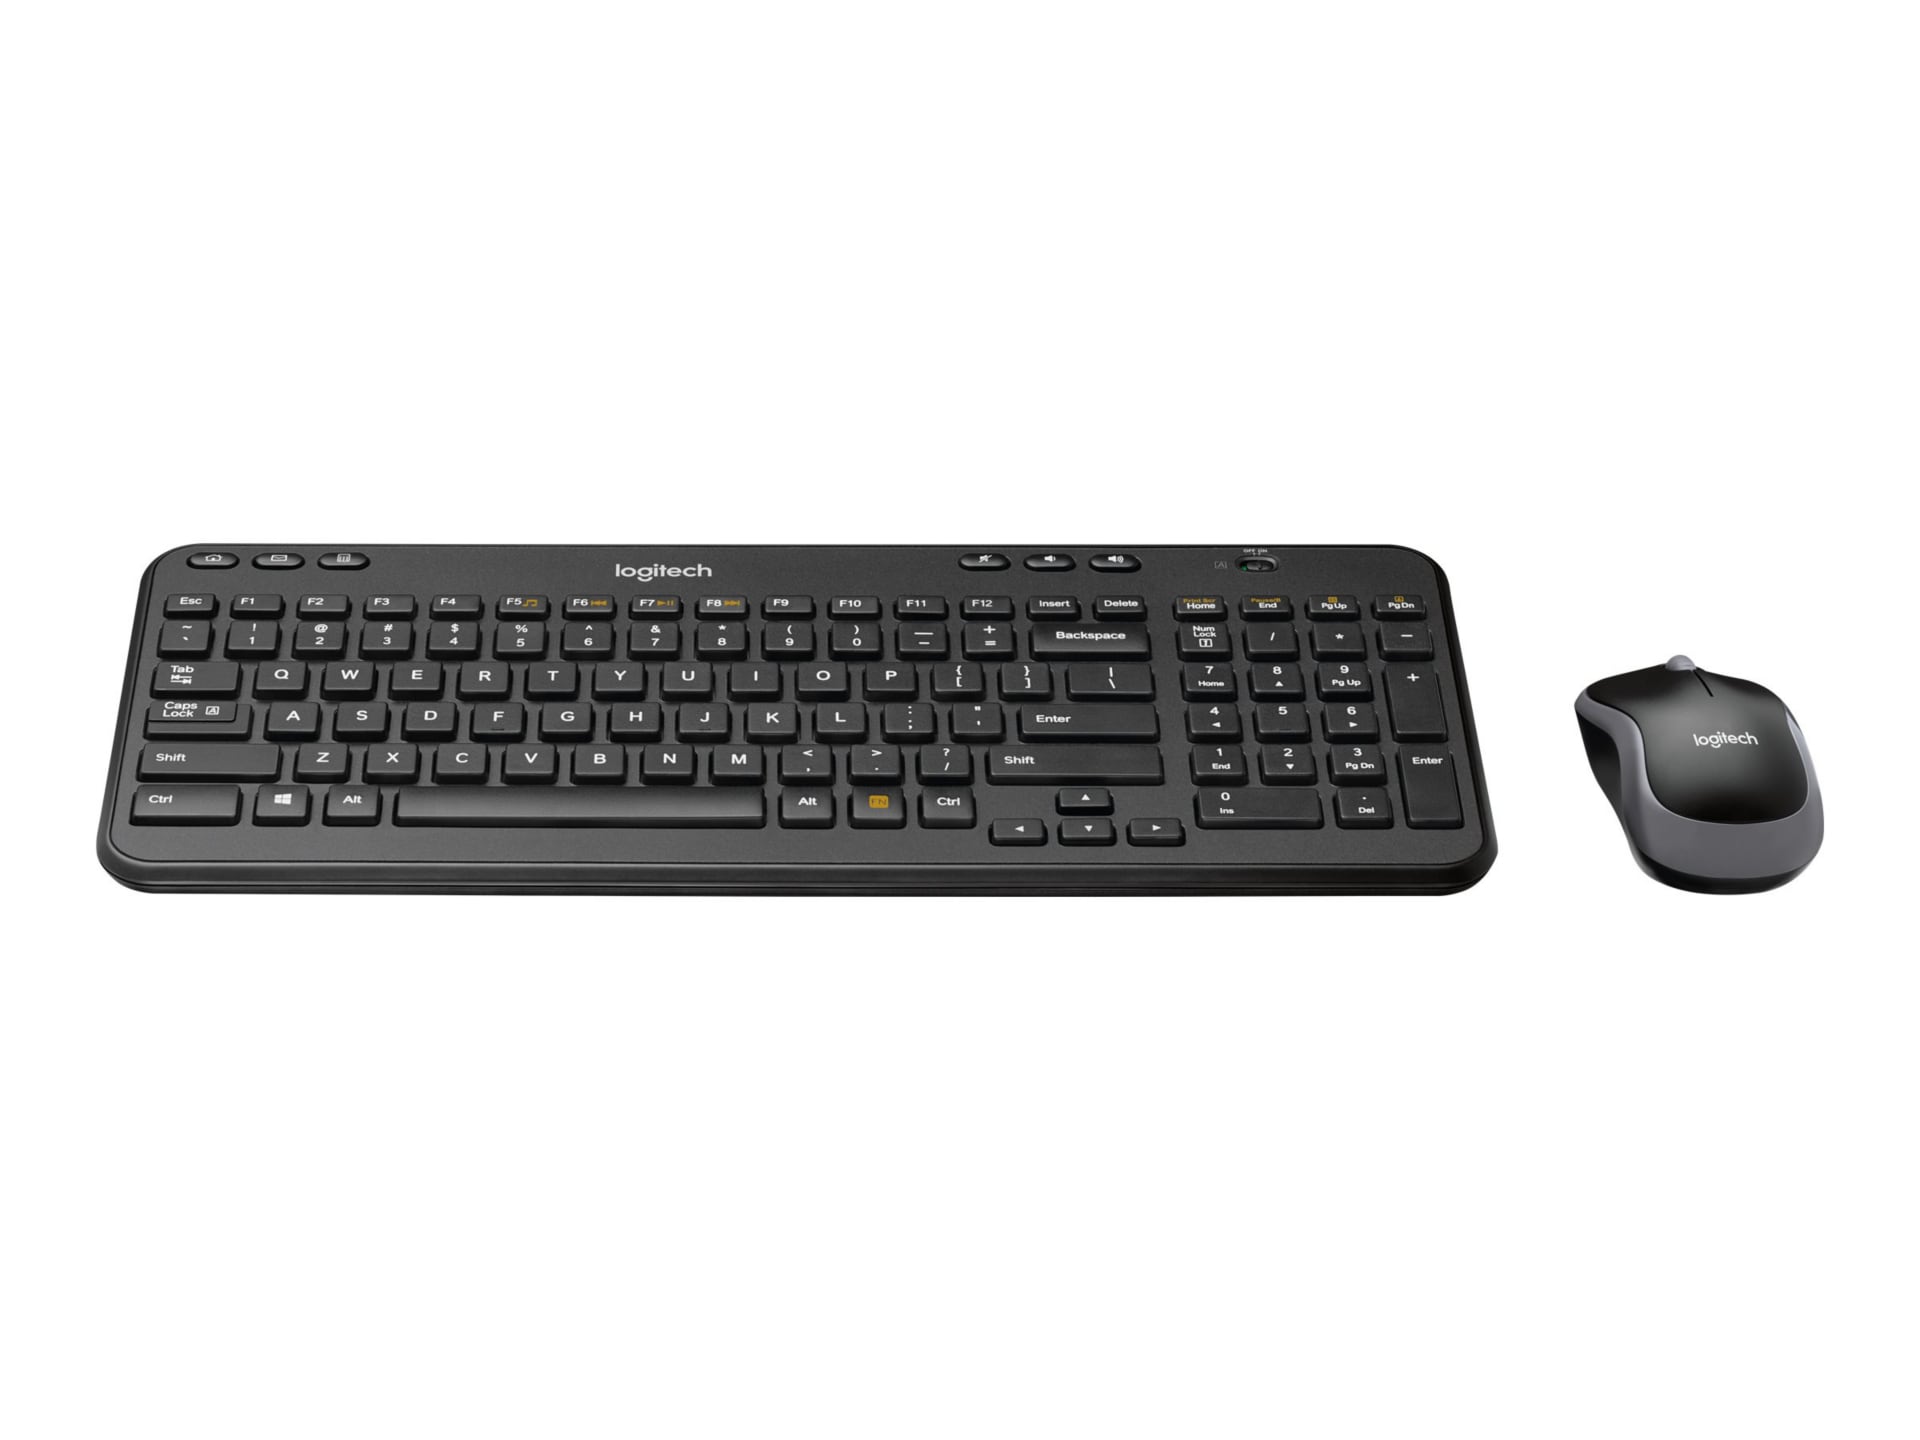 Descent Vil ikke Egern Logitech Wireless Combo MK360 - keyboard and mouse set - 920-003376 -  Keyboard & Mouse Bundles - CDW.com